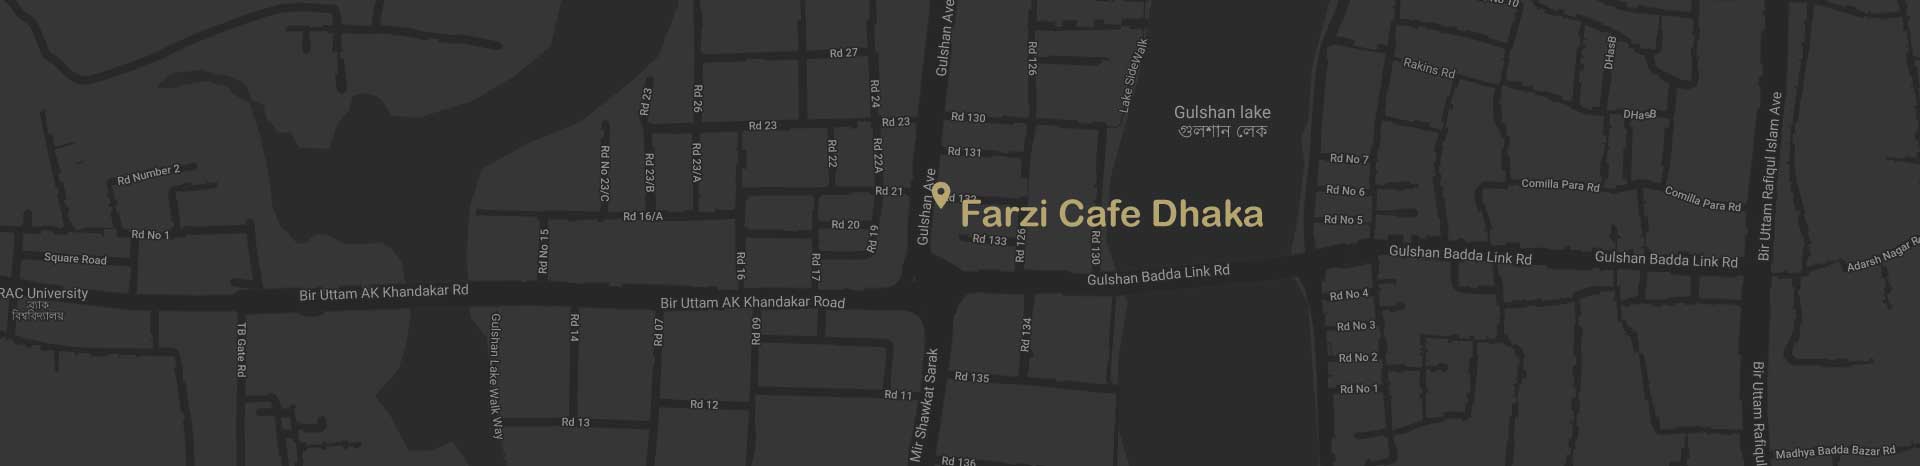 Map-FarziCafeDhaka